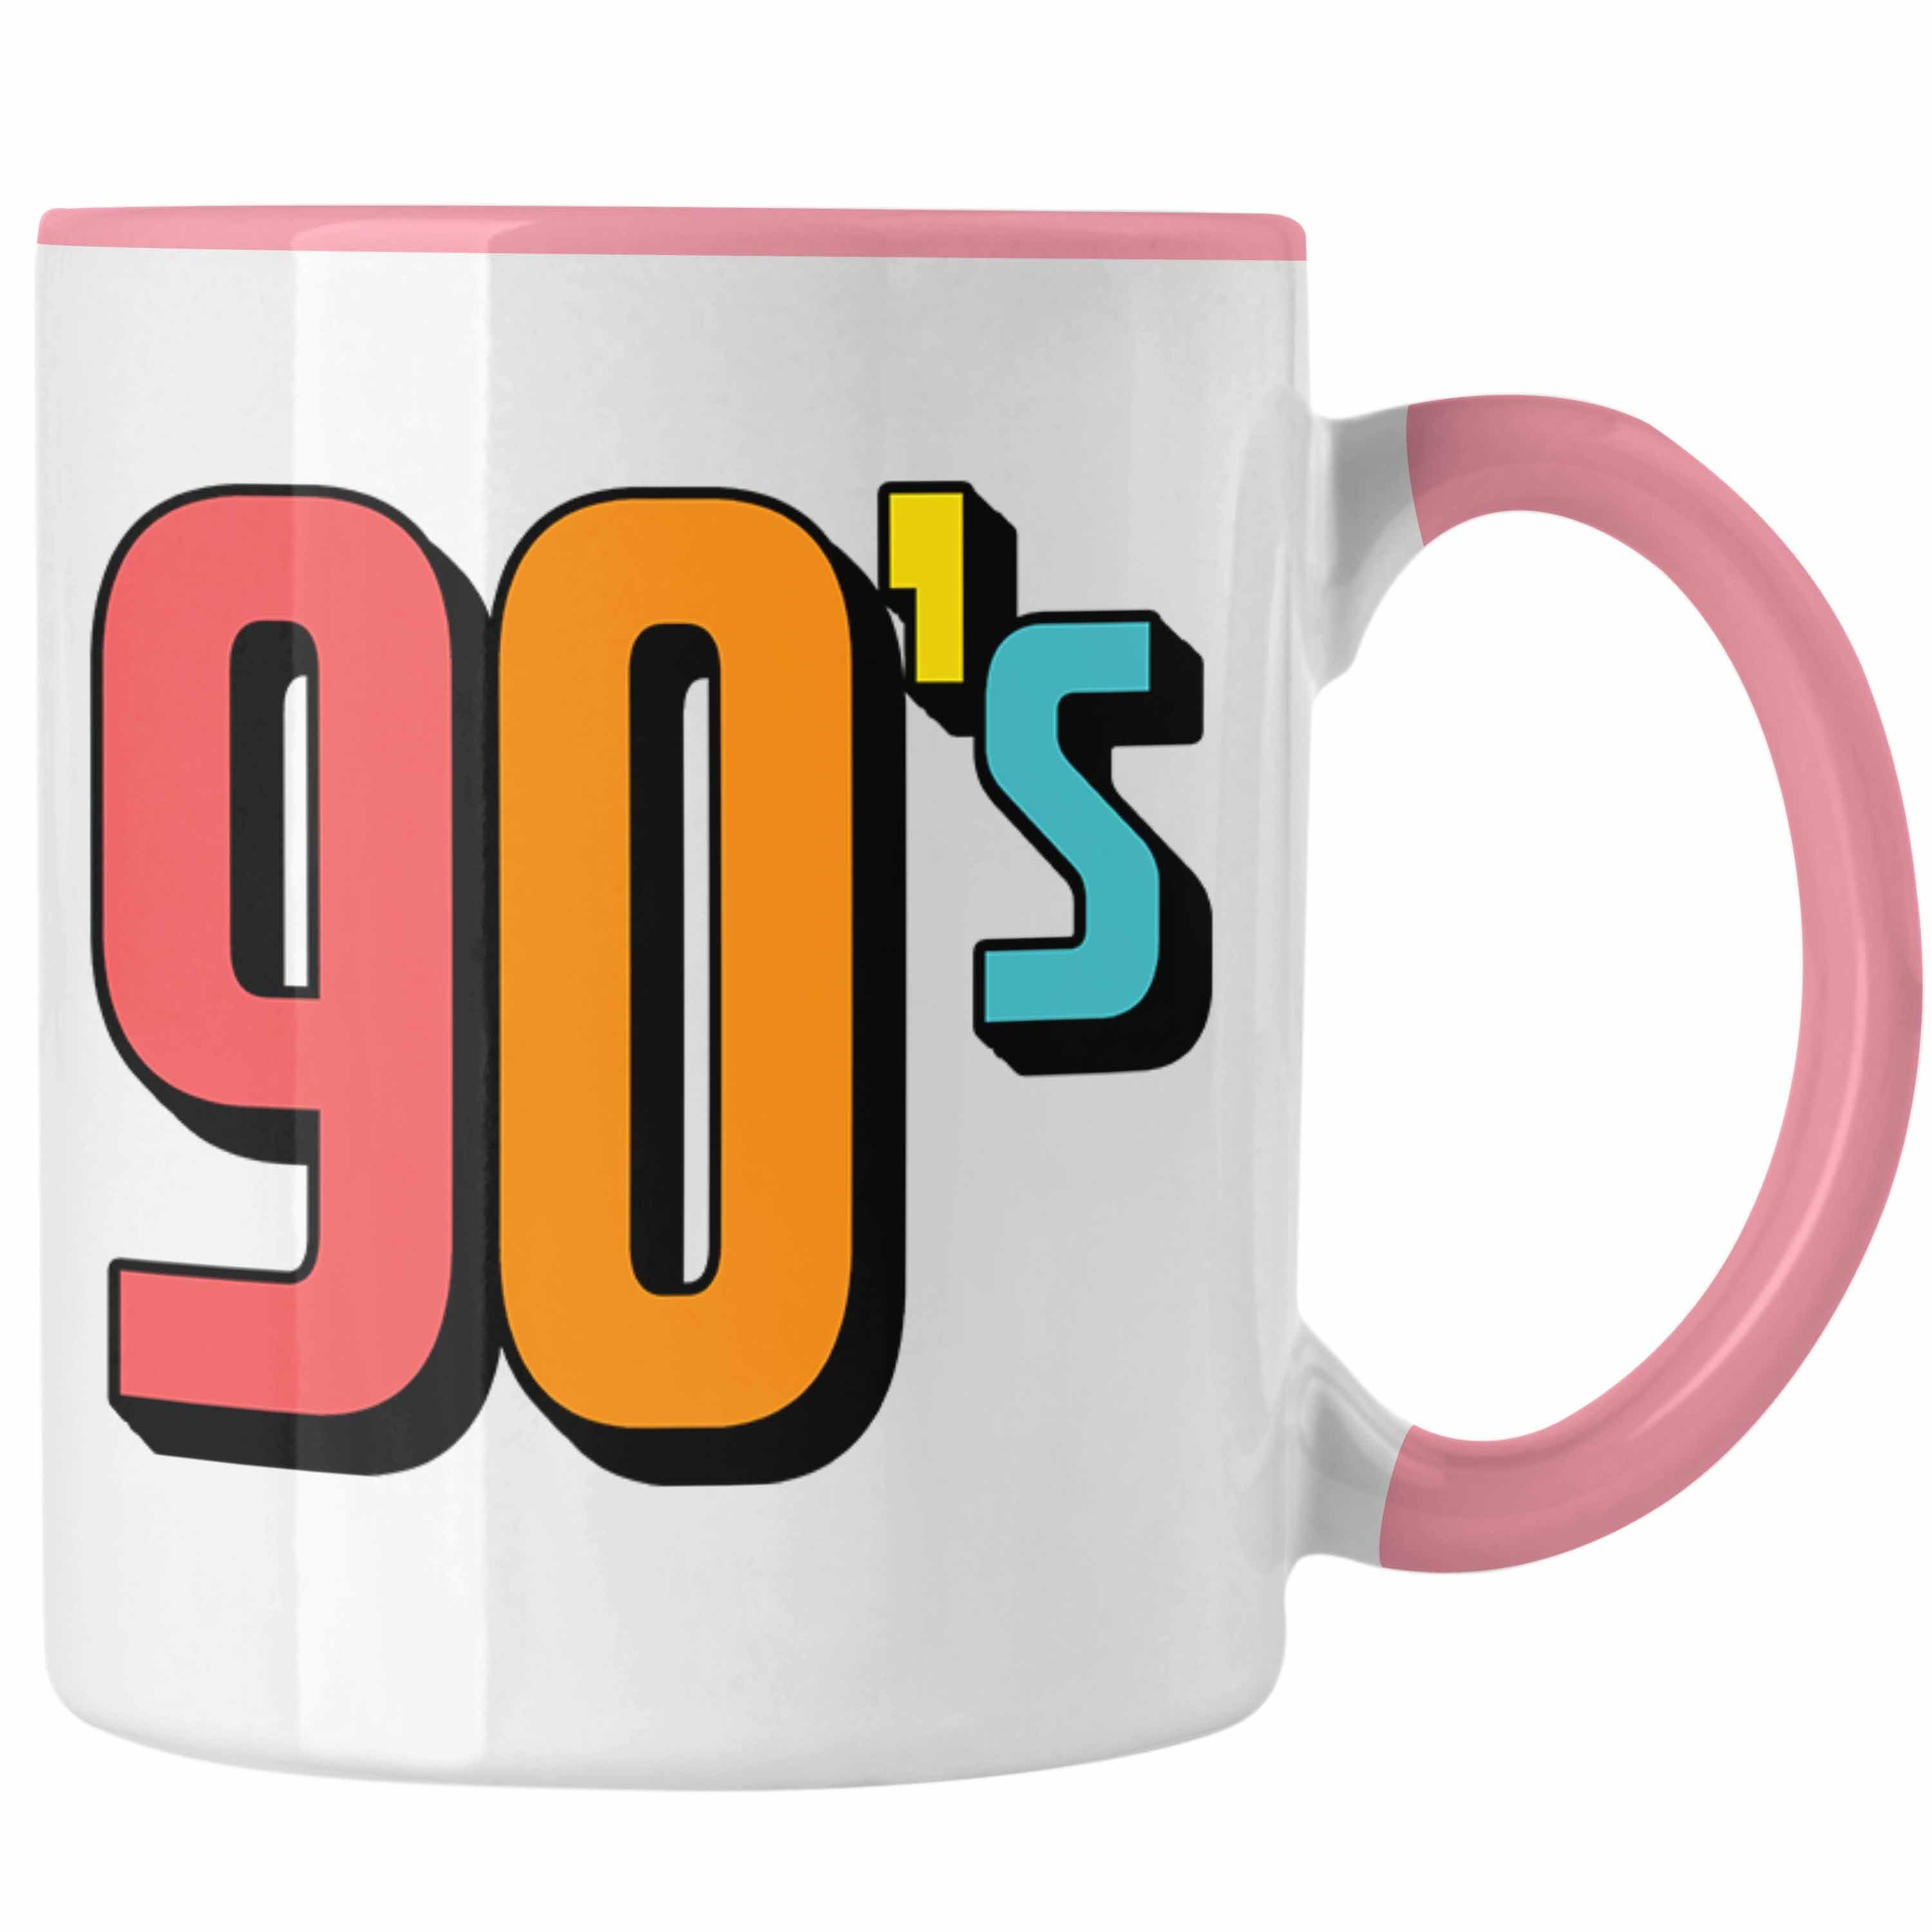 Trendation Tasse 90er Jahre Tasse "90's" - Retro Geschenk für Nostalgiker Rosa